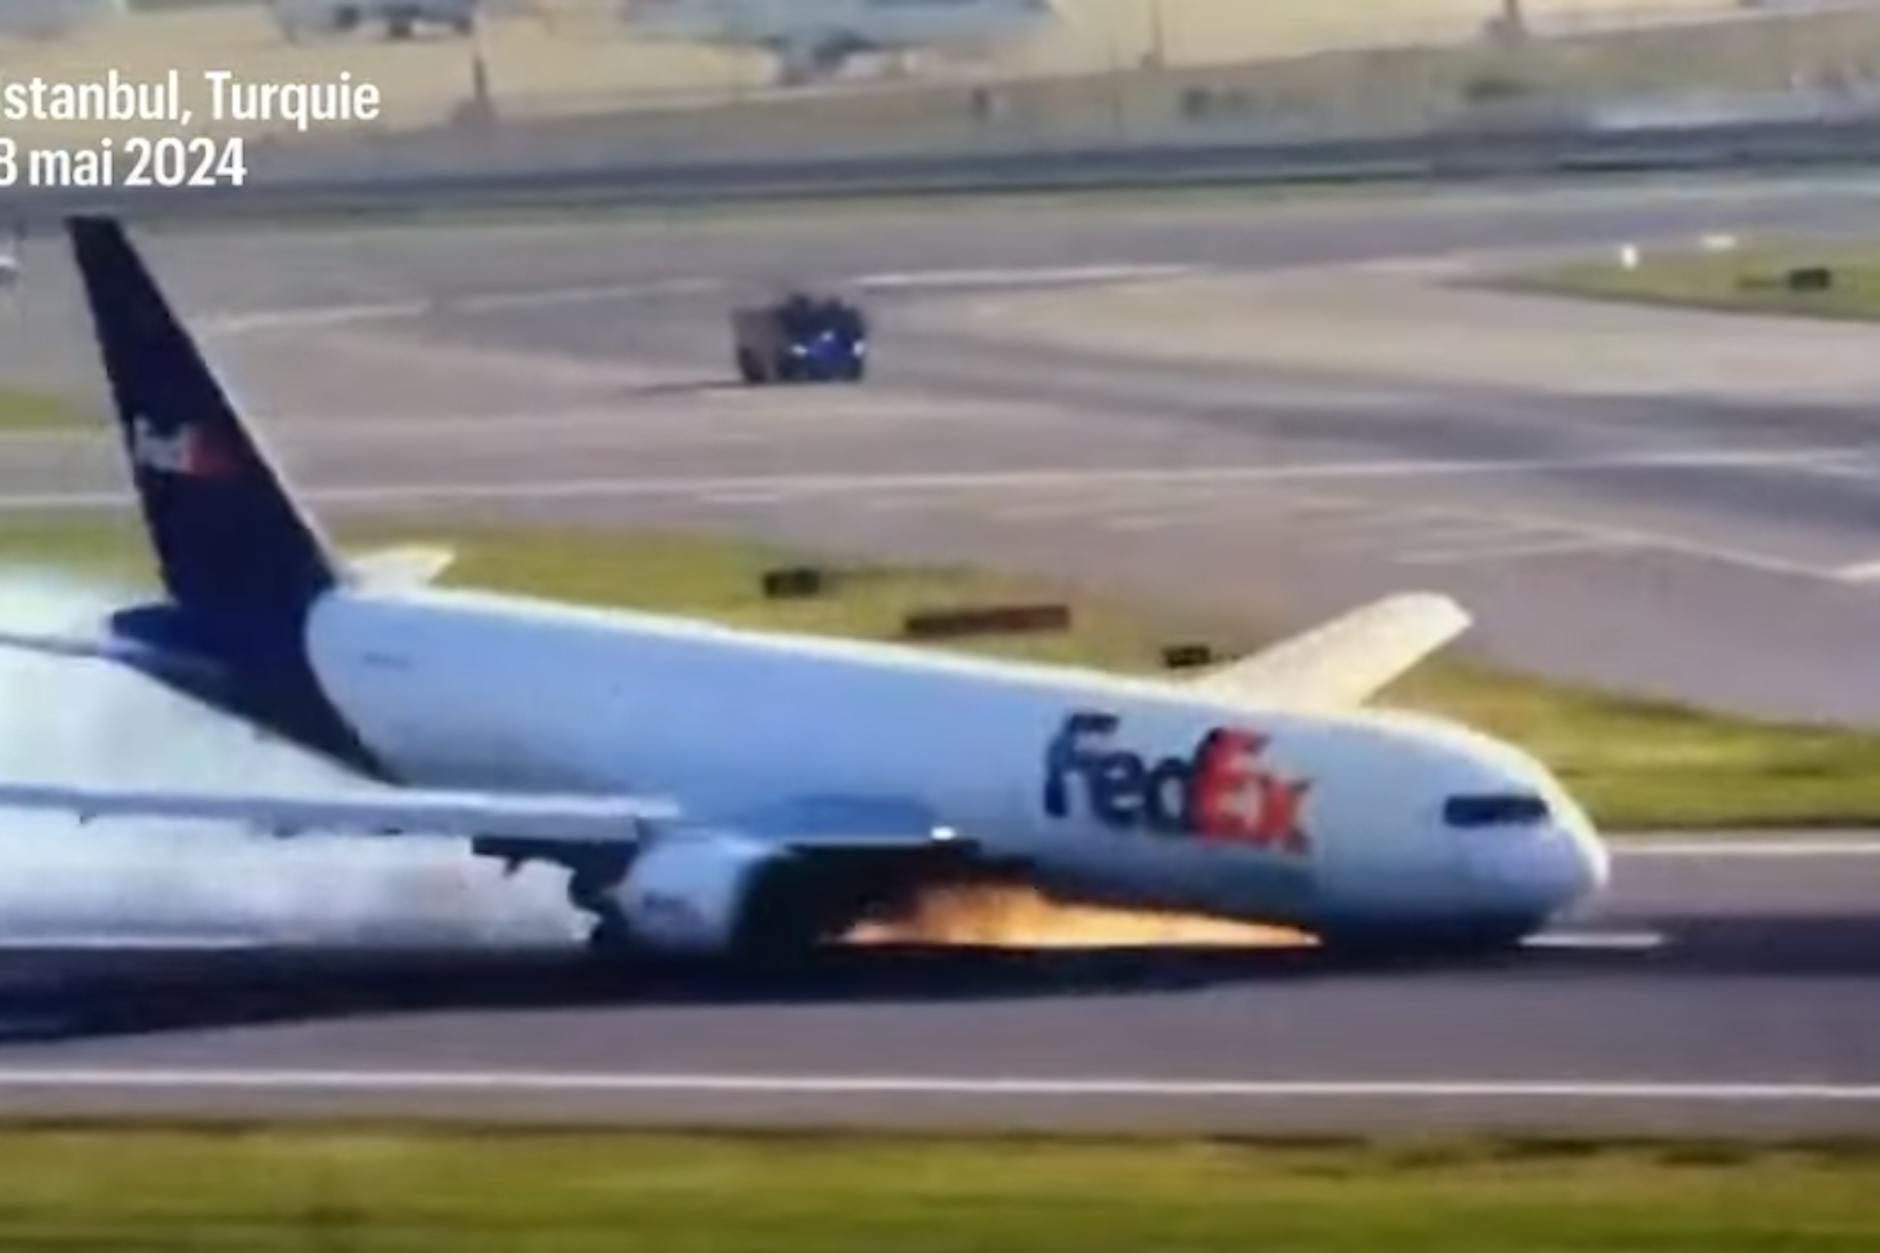 VIDEO: Flugzeug legt gefährliche Bauchlandung hin